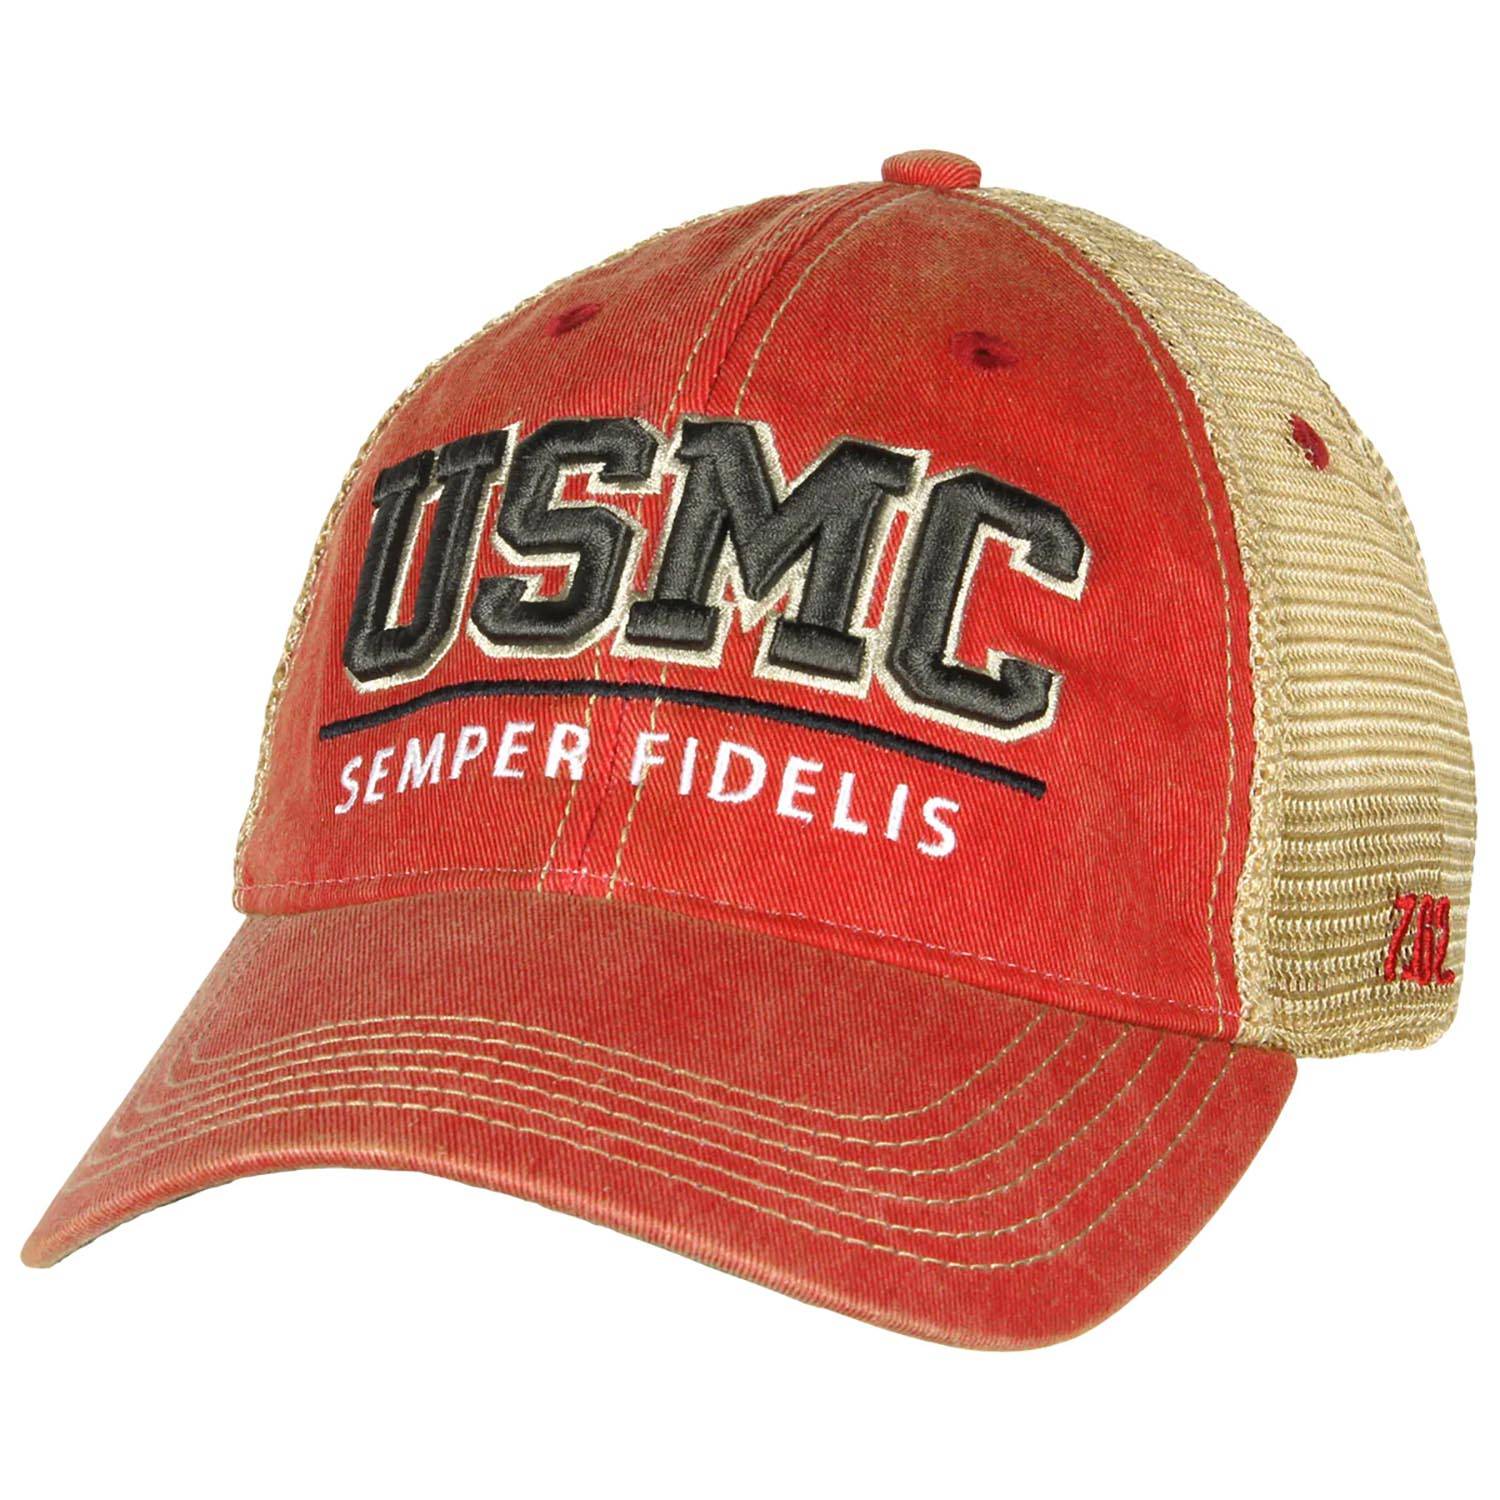 7.62 DESIGN USMC 'SEMPER FIDELIS' VINTAGE TRUCKER HAT